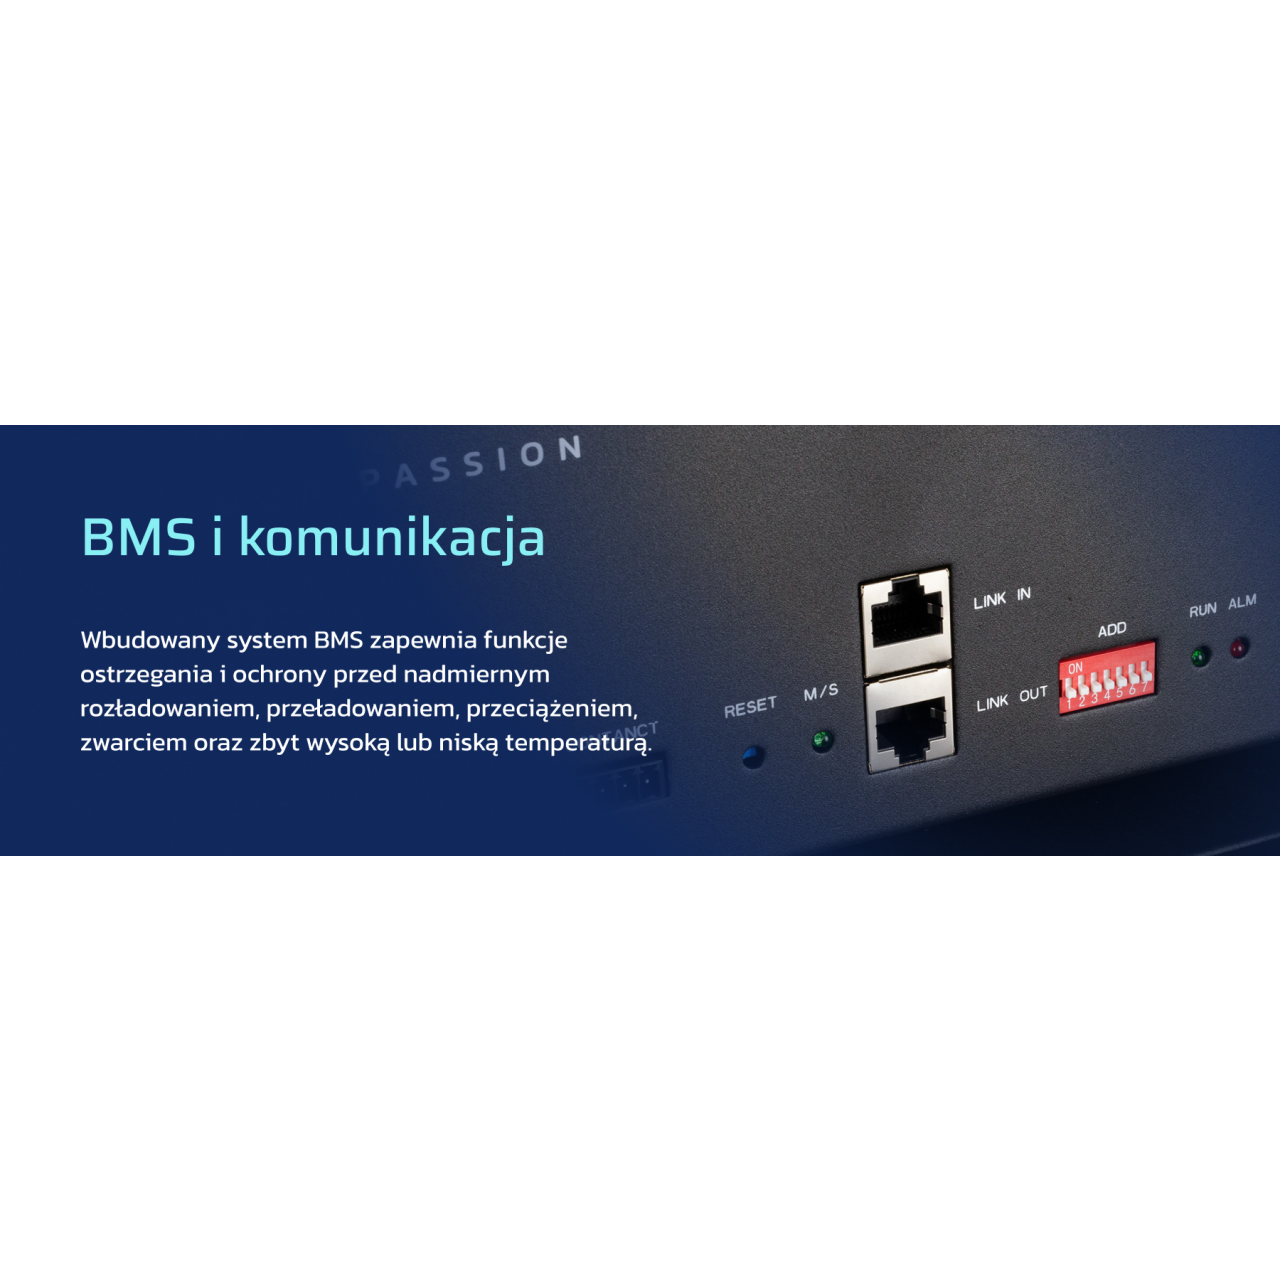 BMS i komunikacja, Wbudowany system BMS zapewnia funkcje ostrzegania i ochrony przed nadmiernym rozładowaniem, przeładowaniem, przeciążeniem, zwarciem oraz zbyt wysoką lub niską temperaturą.